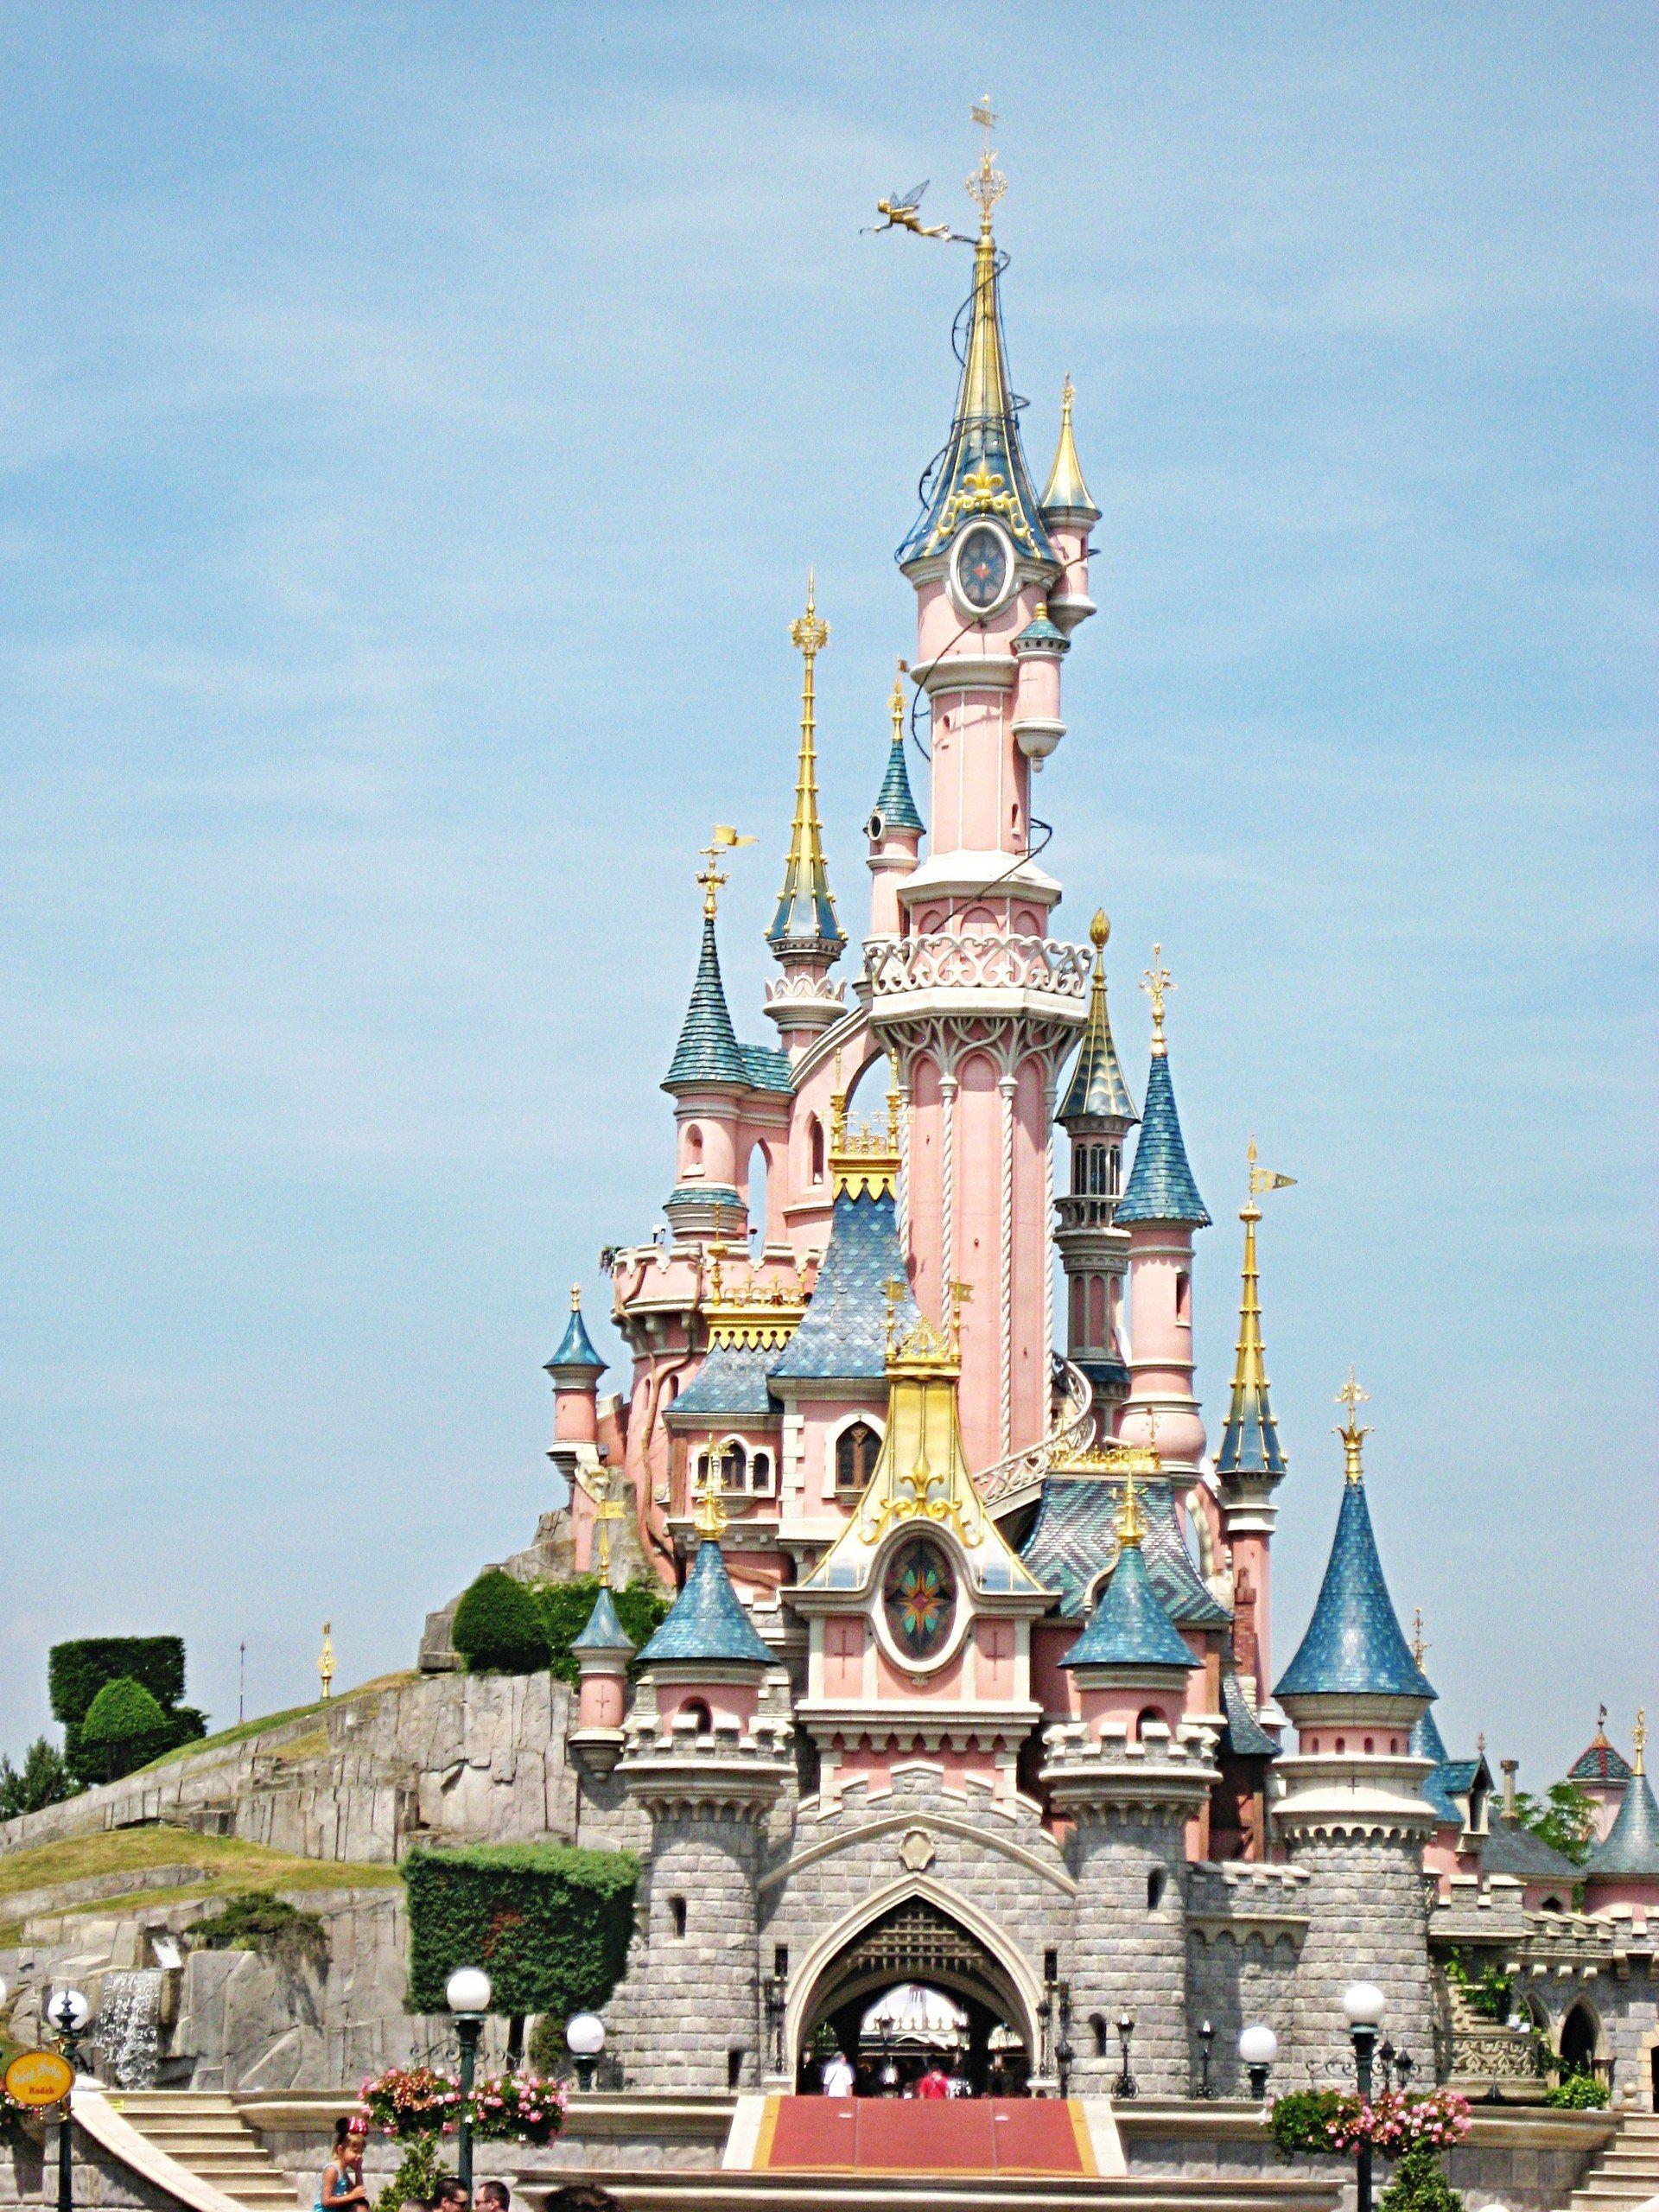 Download Rapunzel's Castle In Disneyland Paris Wallpaper